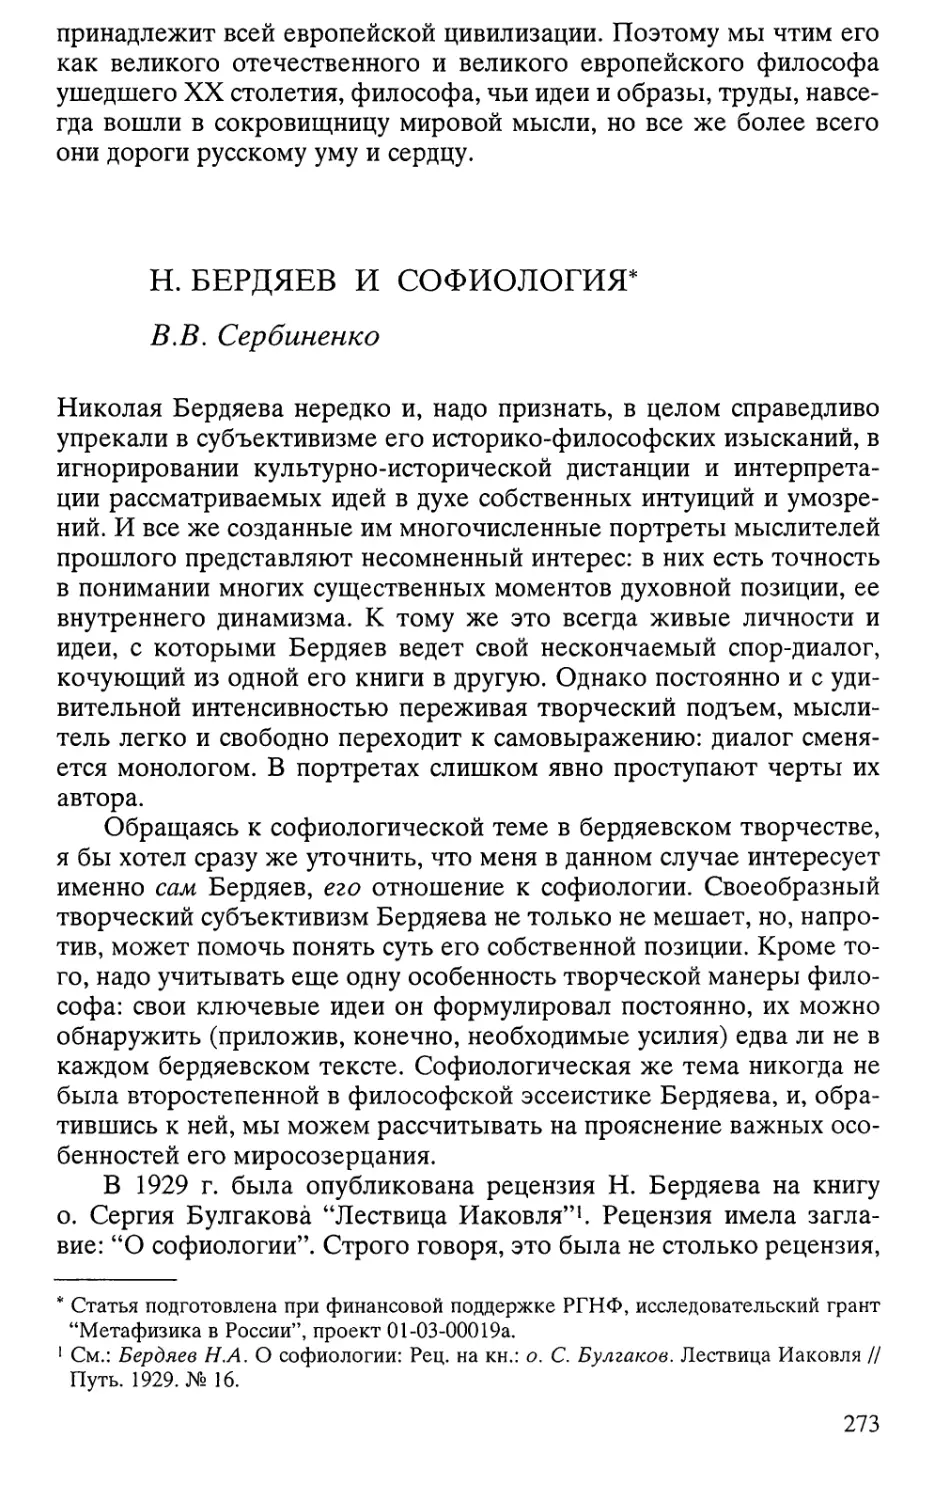 Сербиненко В.В. Н.Бердяев и софиология